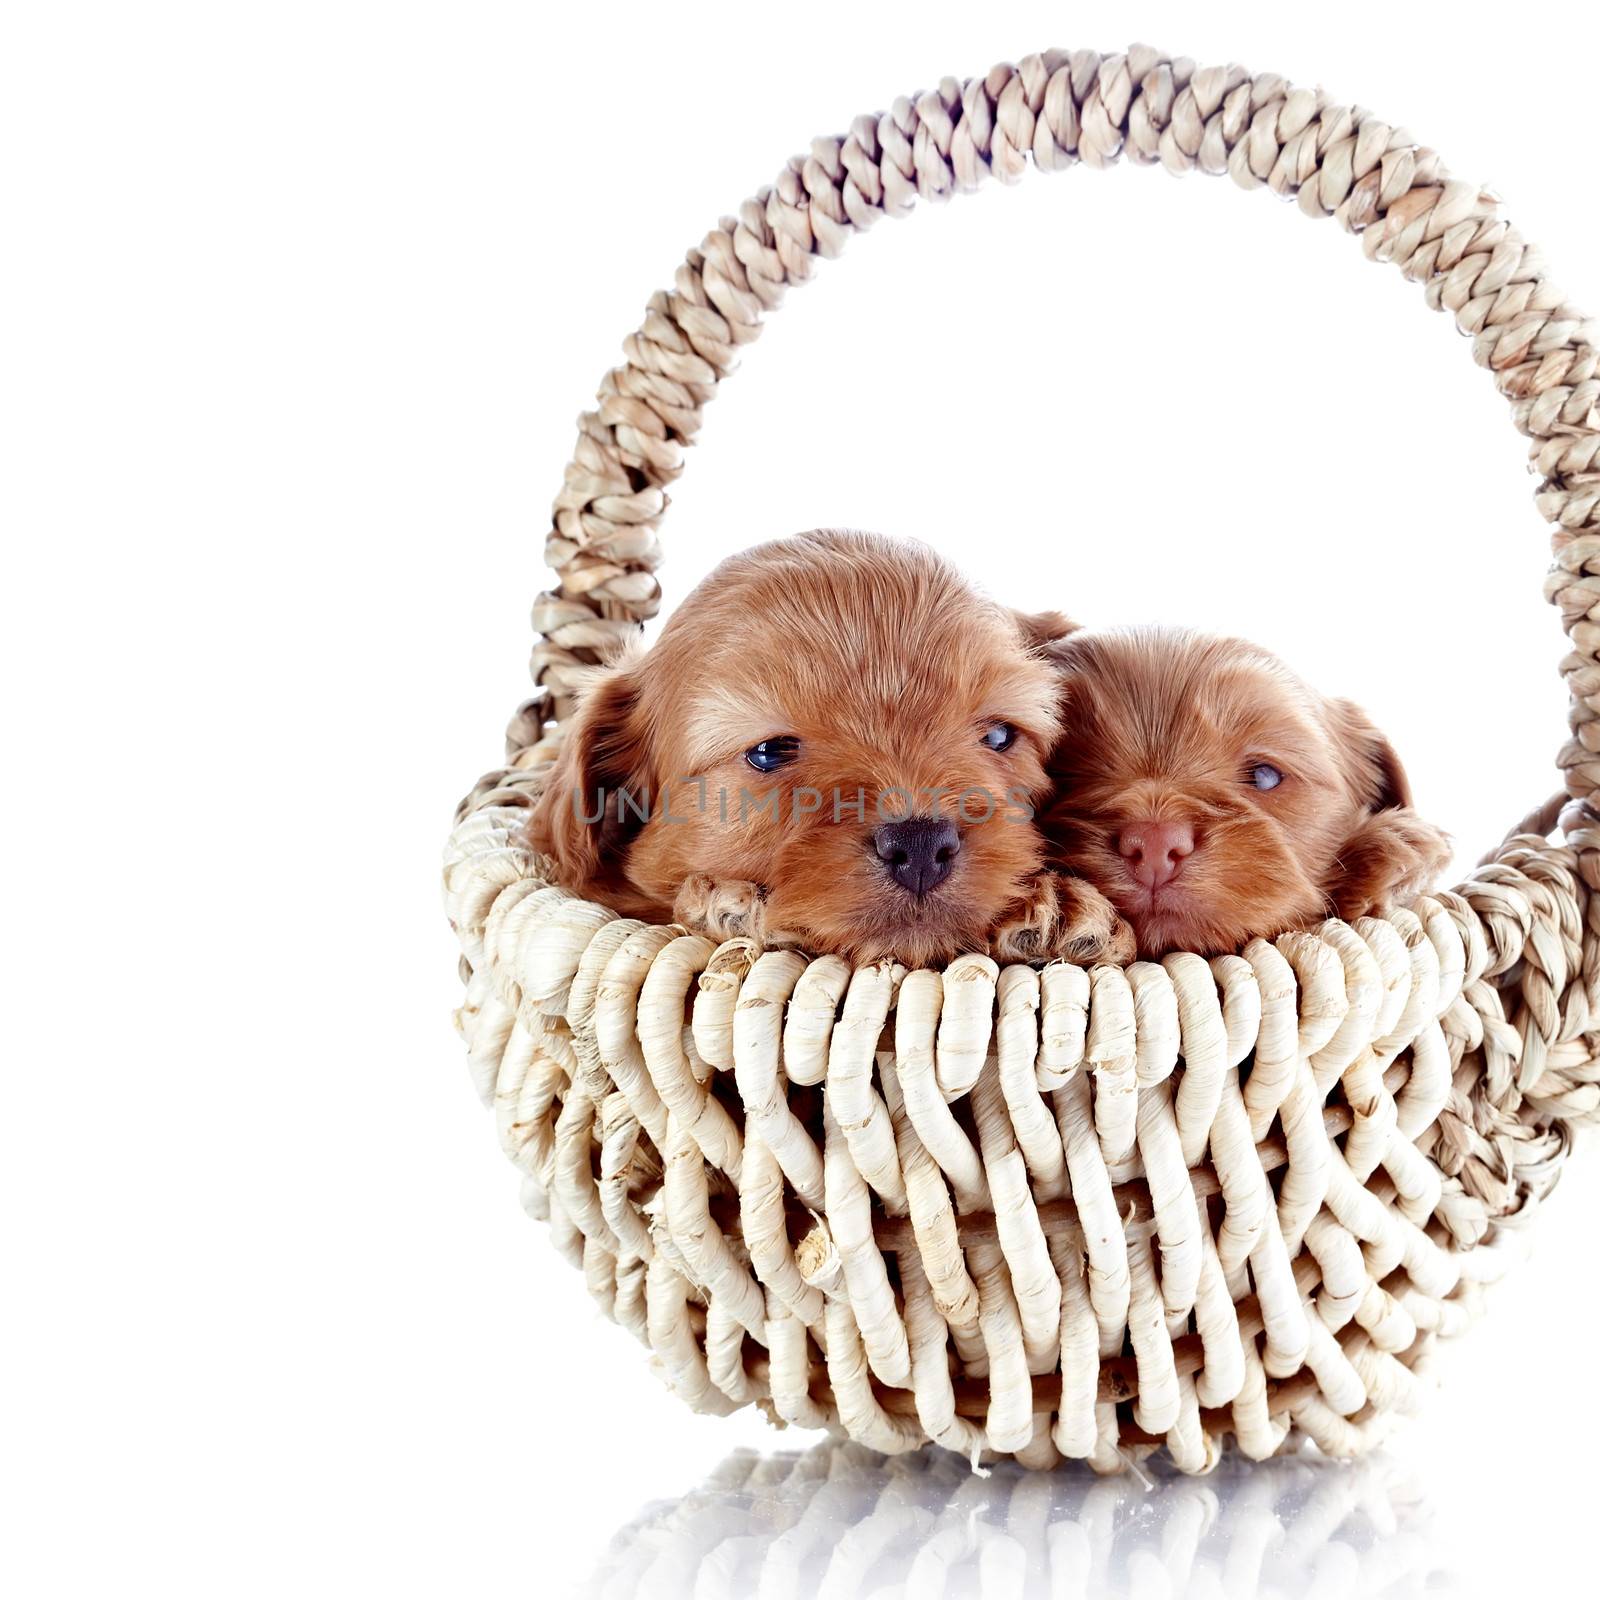 Two puppies in a wattled basket. by Azaliya